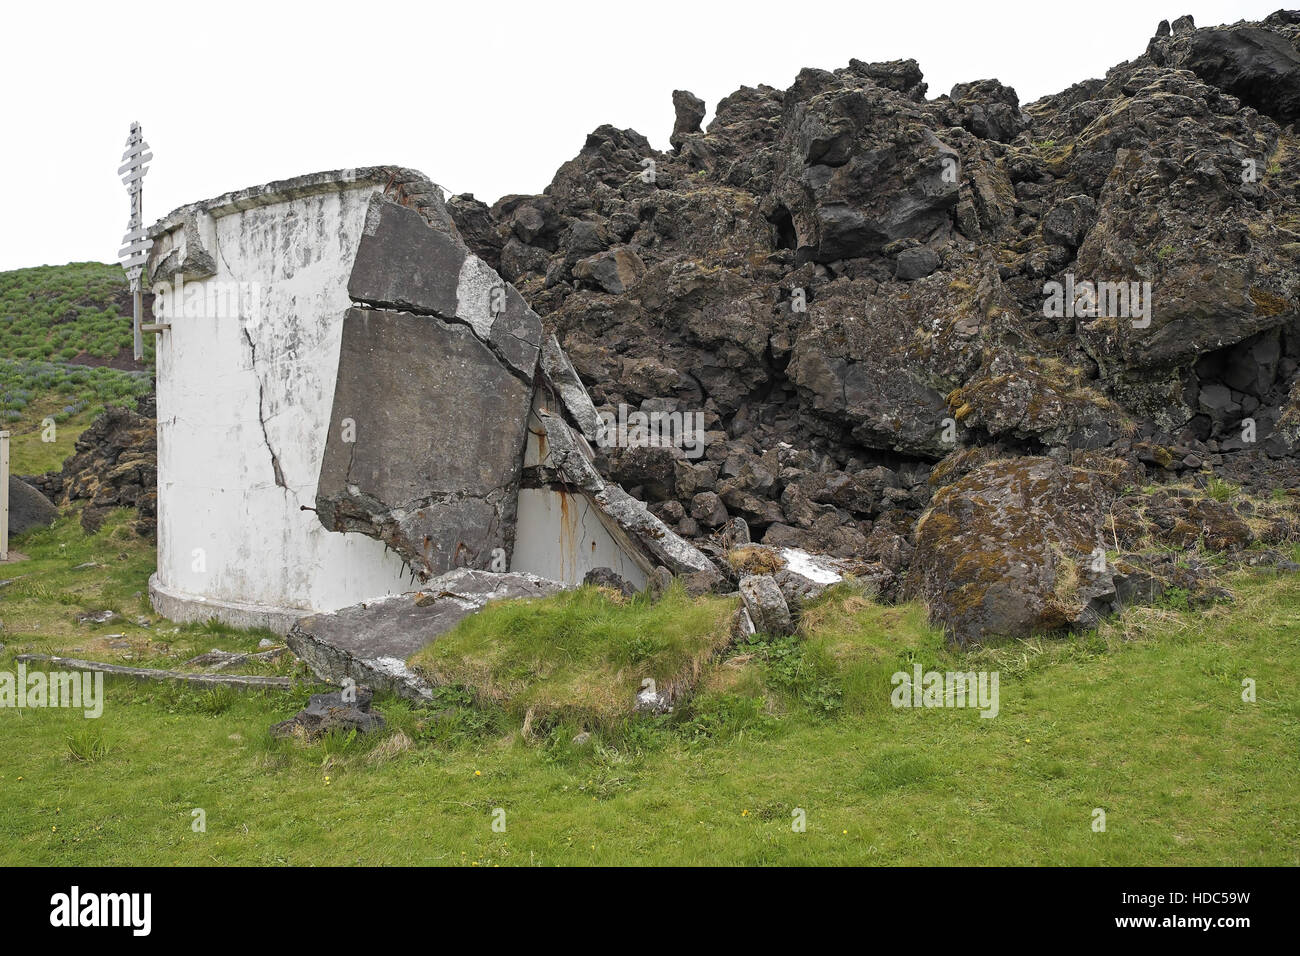 Rand der Lavafeld und zerstörte Betonbehälter, die der Ausbruch des eldfell 1973, heimaey, Island verursacht. Stockfoto